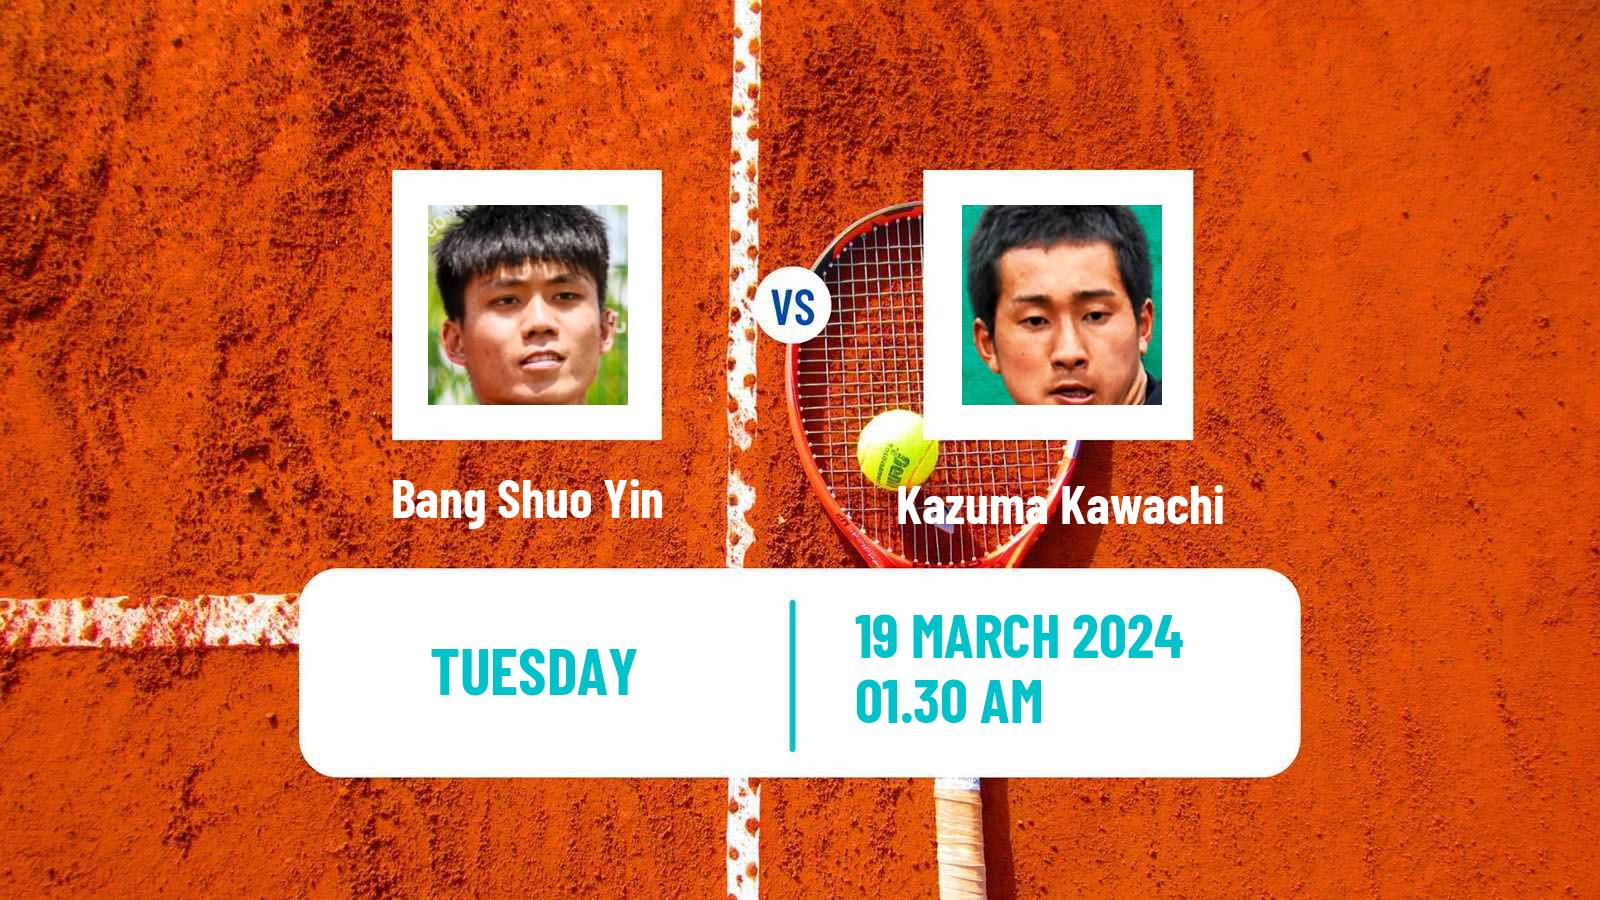 Tennis ITF M15 Chandigarh Men Bang Shuo Yin - Kazuma Kawachi